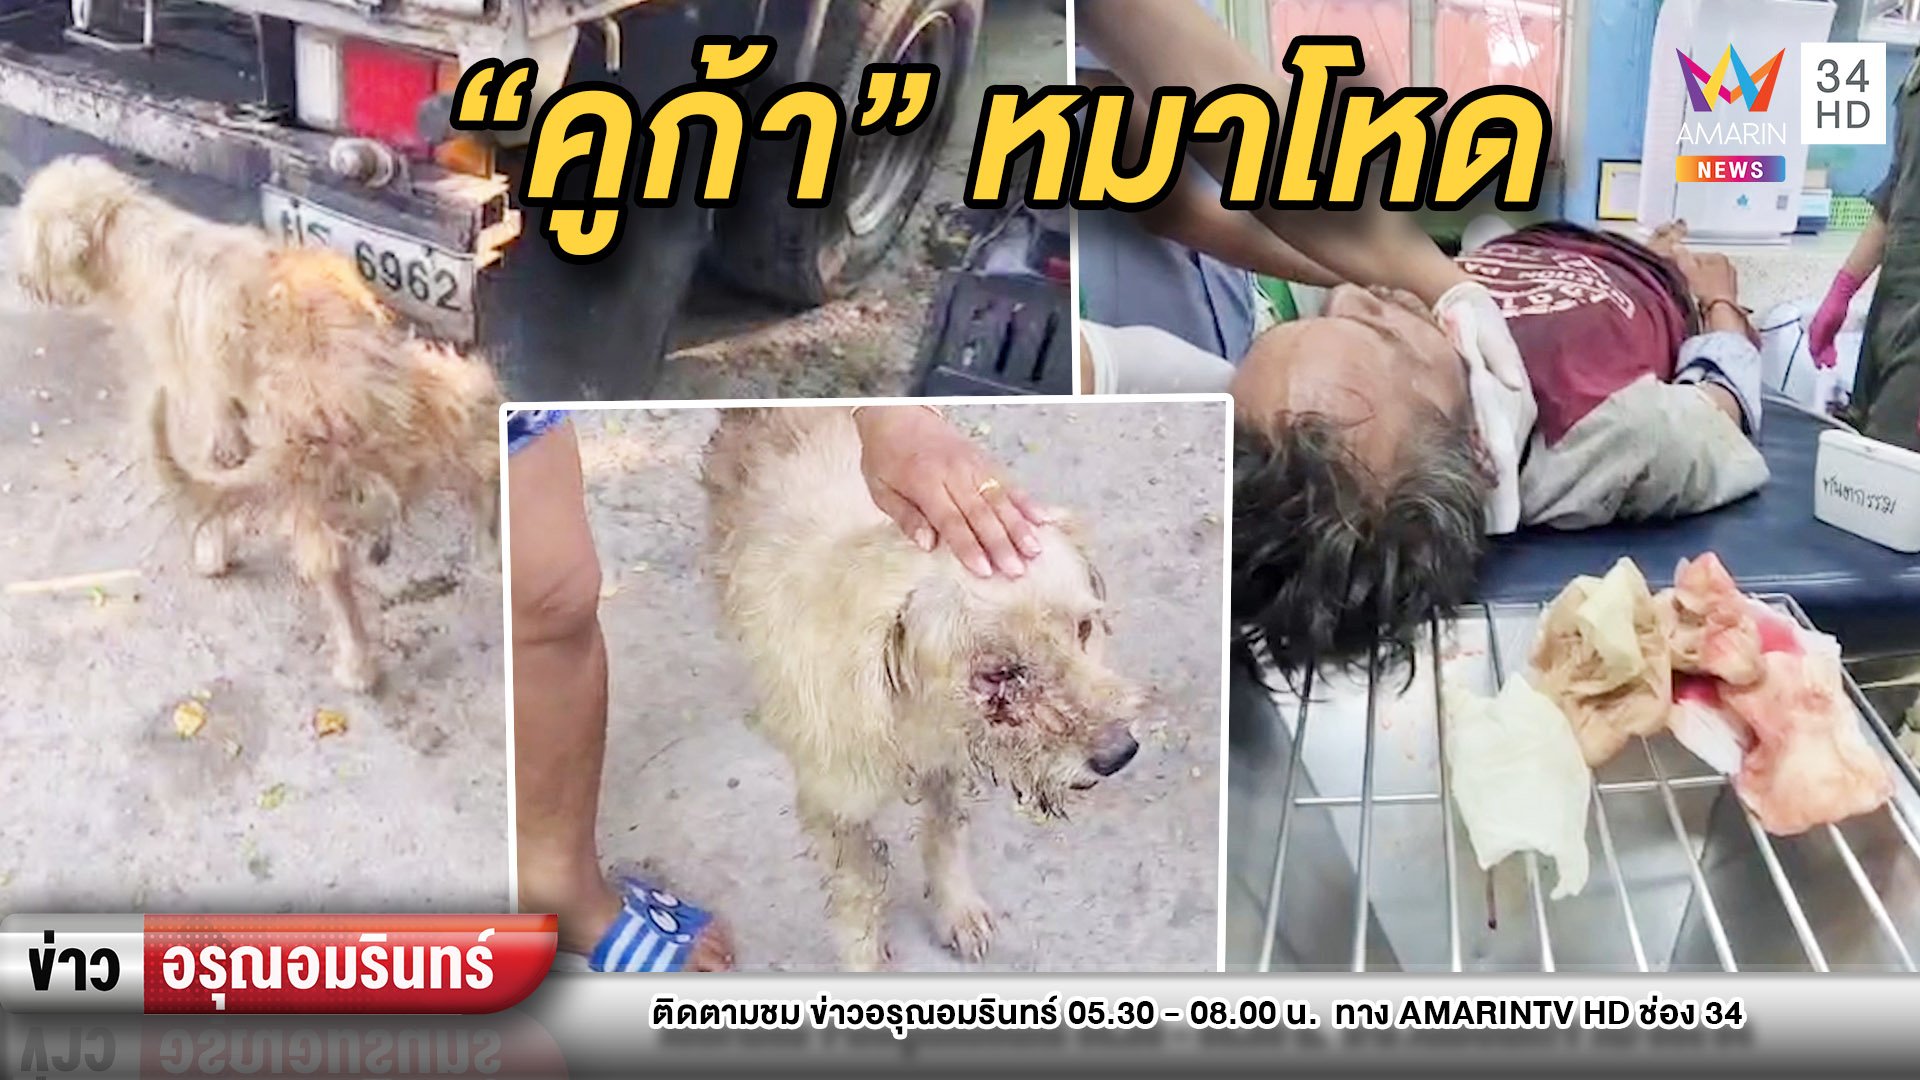 หนุ่มช่างประปาโชคร้าย หมาขย้ำคอเลือดสาด | ข่าวอรุณอมรินทร์ | 27 เม.ย. 63 | AMARIN TVHD34